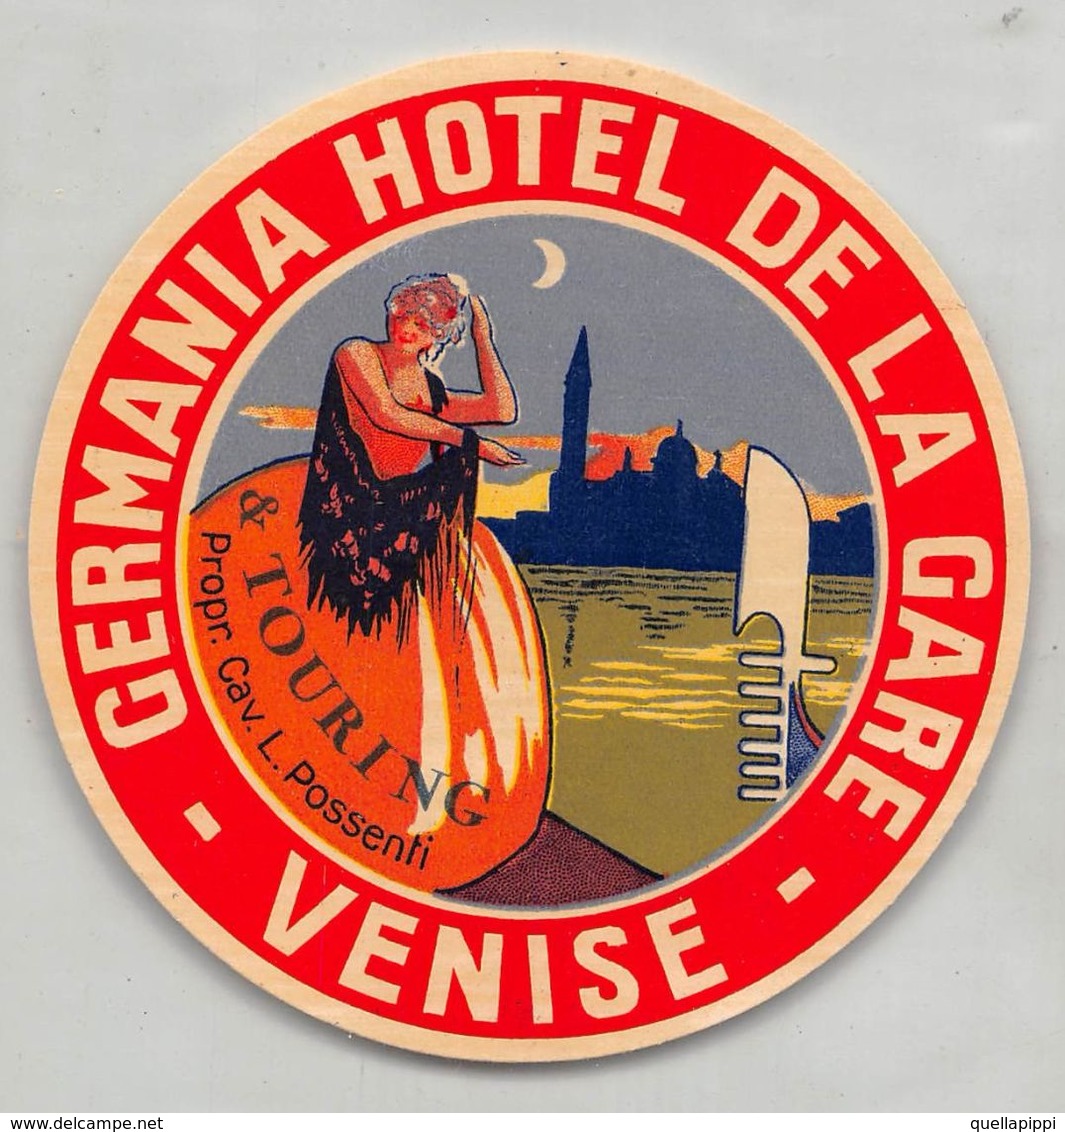 07319 "HOTEL GERMANIA HOTEL DE LA GARE - VENISE - PROPR. CAV. L. POSSENTI " ETICHETTA ORIGINALE - ORIGINAL LABEL - - Adesivi Di Alberghi